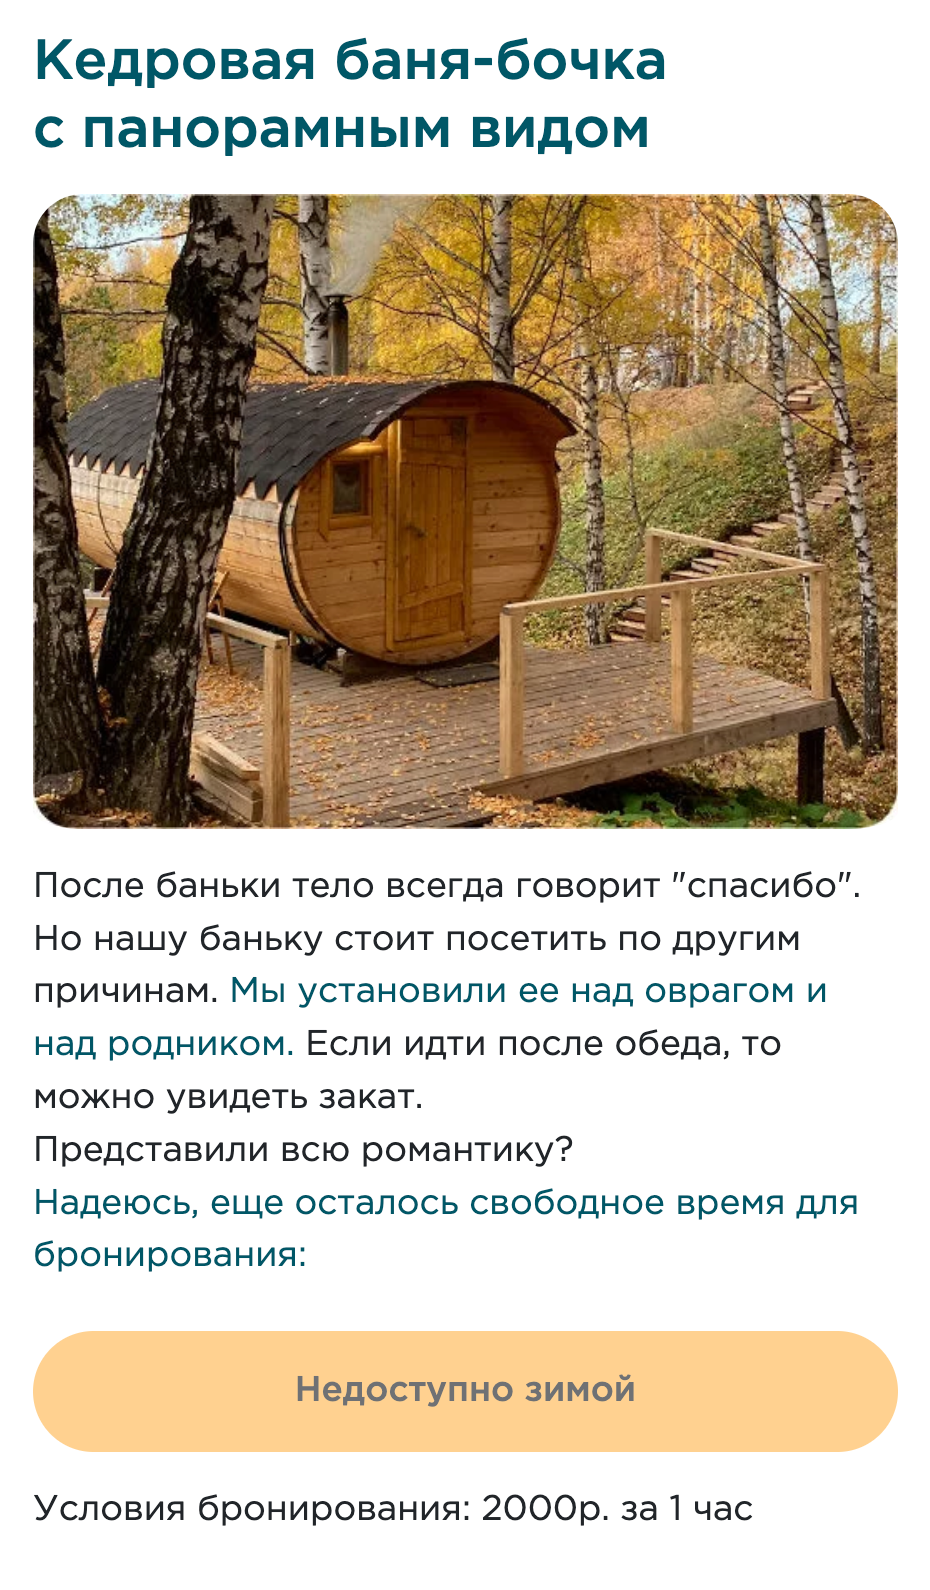 В Urman camp предлагают попариться в бане. Источник: urman.camp